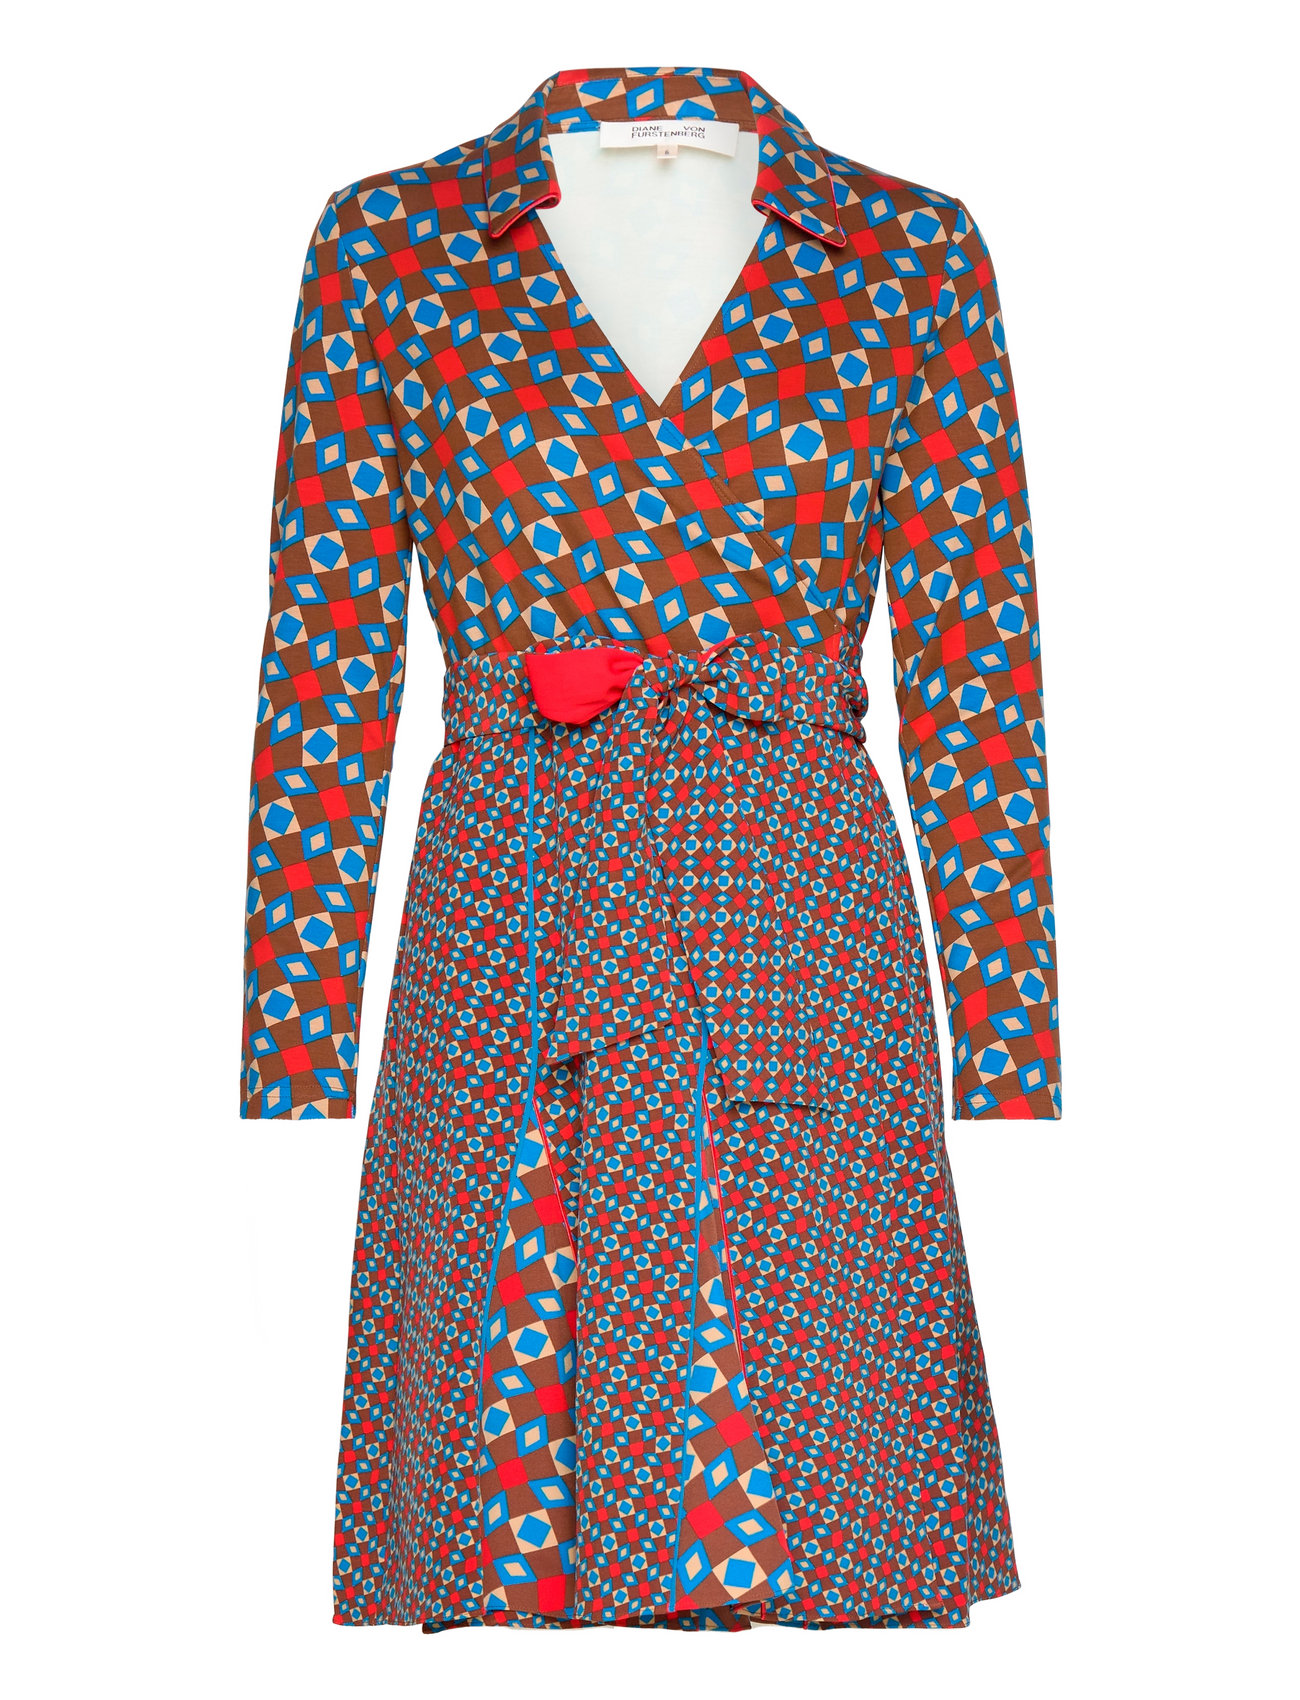 Konsultere Eftermæle Stationær Diane von Furstenberg Dvf Dublin Wrap Dress (Mid/sm Tile Geo Choco),  1871.55 kr | Stort udvalg af designer mærker | Booztlet.com